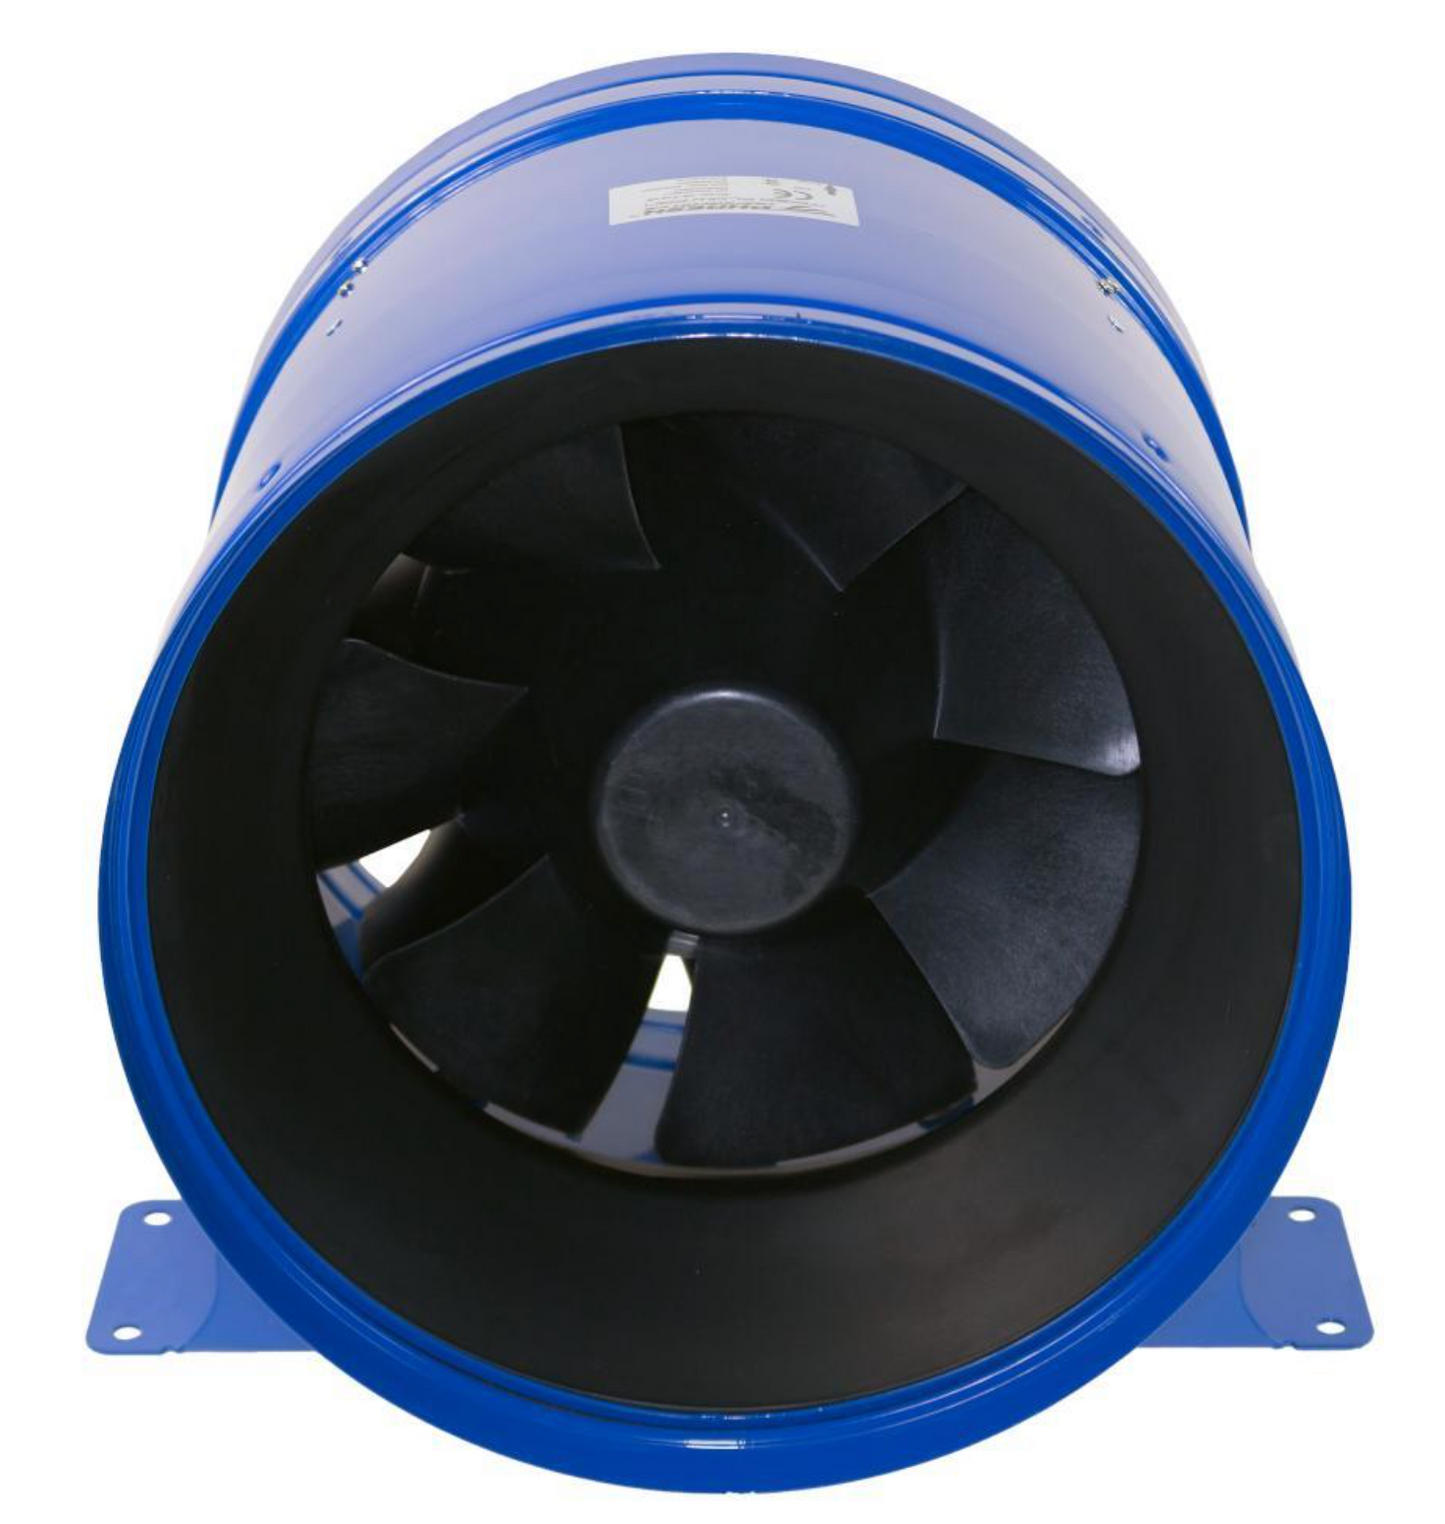 Phresh Hyper Fan V2 300mm